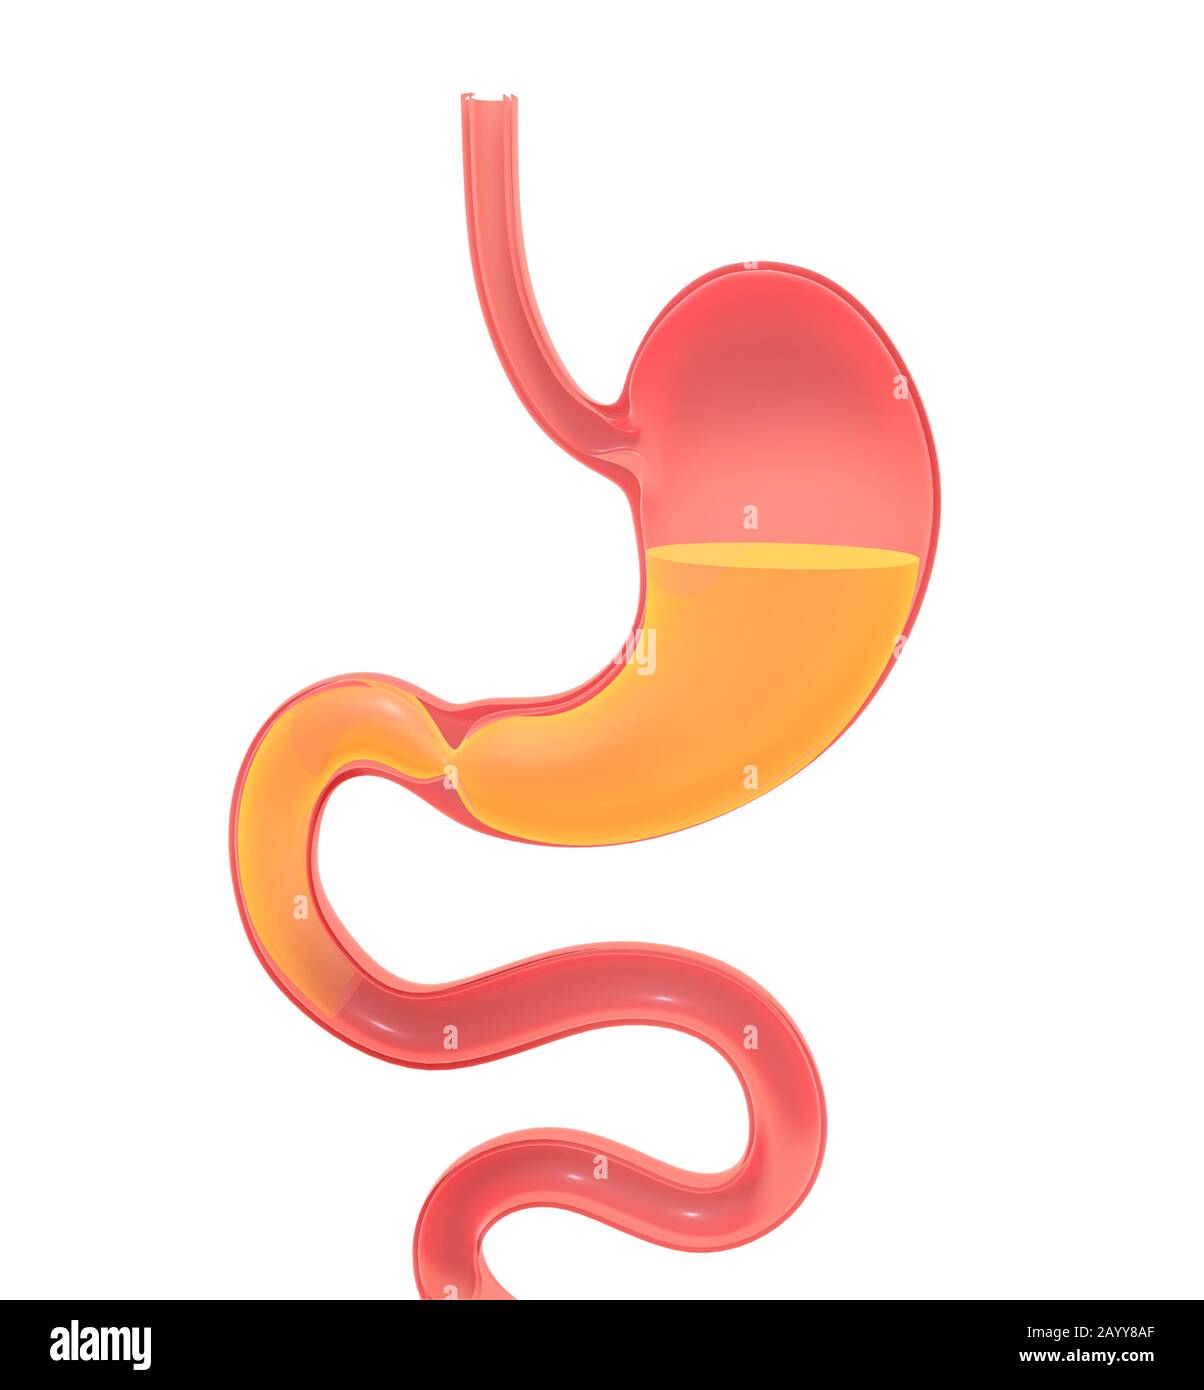 Illustrazione 3D che mostra l'interno dello stomaco facendo digestione. Rappresentazione a volume vuoto, silhouette isolata appoggiata al suolo. Foto Stock